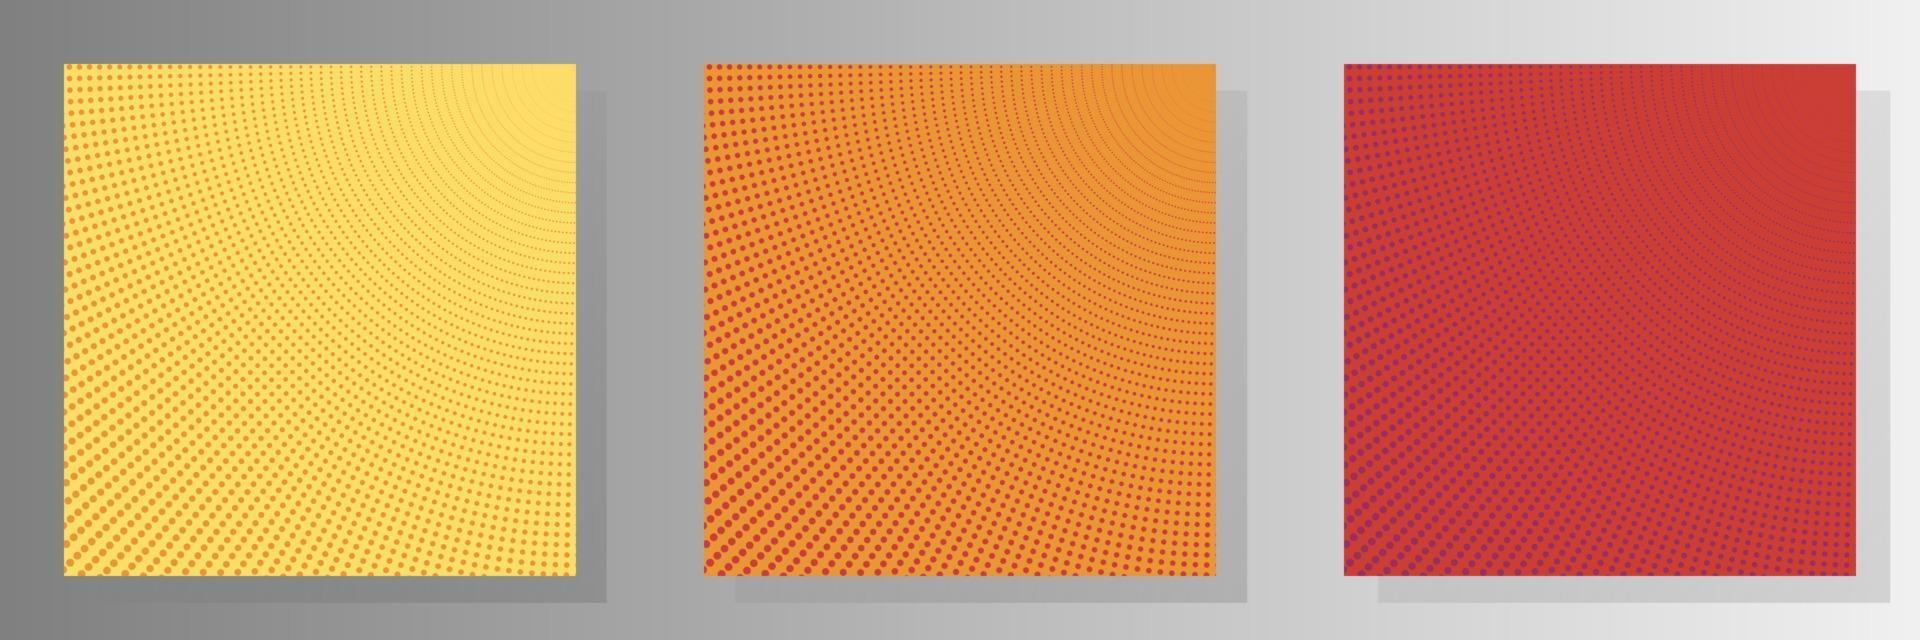 kit de vector de plantillas de página de título de semitono perforado de punto de fondo abstracto. fondos de tonos de pantalla descoloridos del catálogo digital. diseños de página de portada de diseño degradado fondo de color amarillo naranja y rojo.